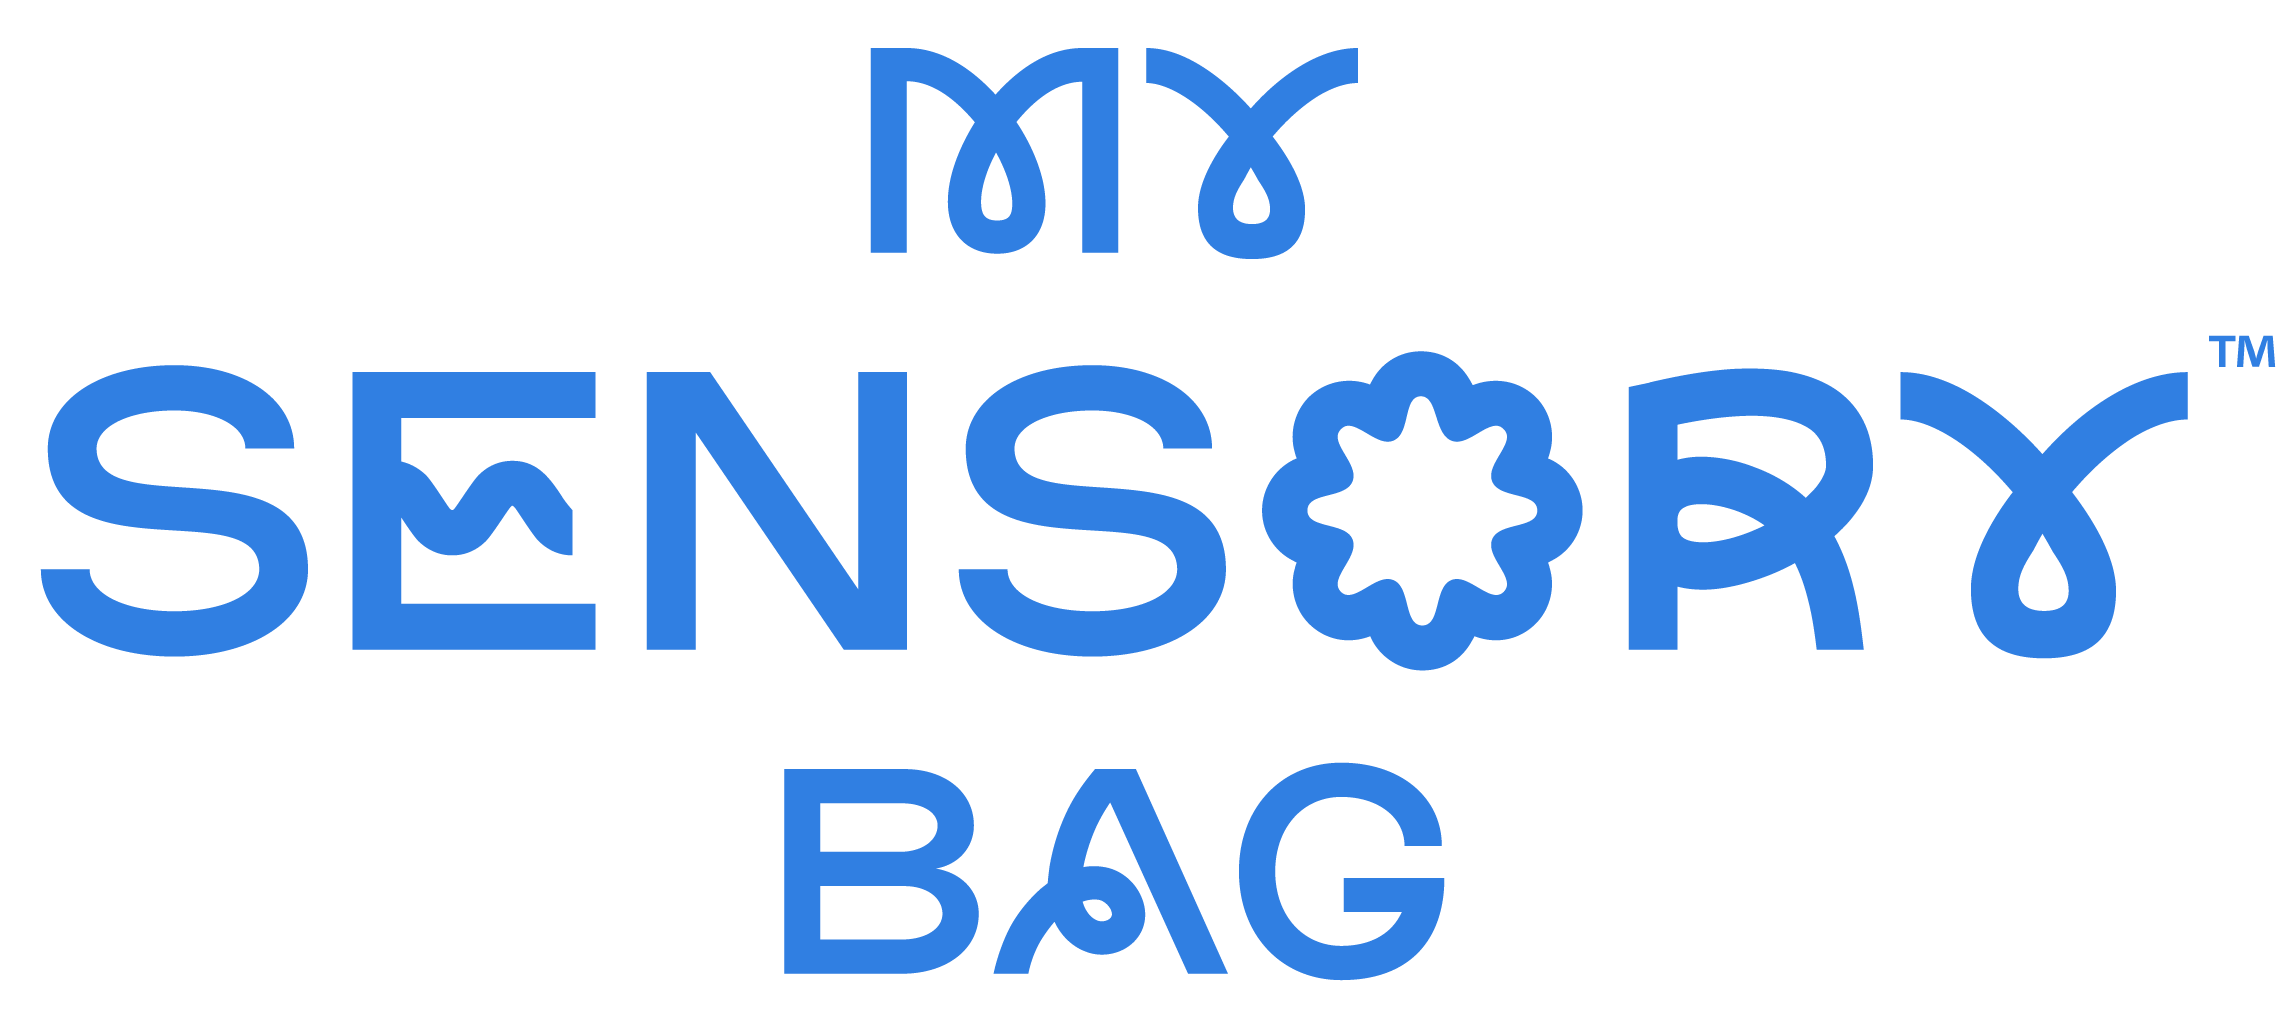 The Sensory Bag